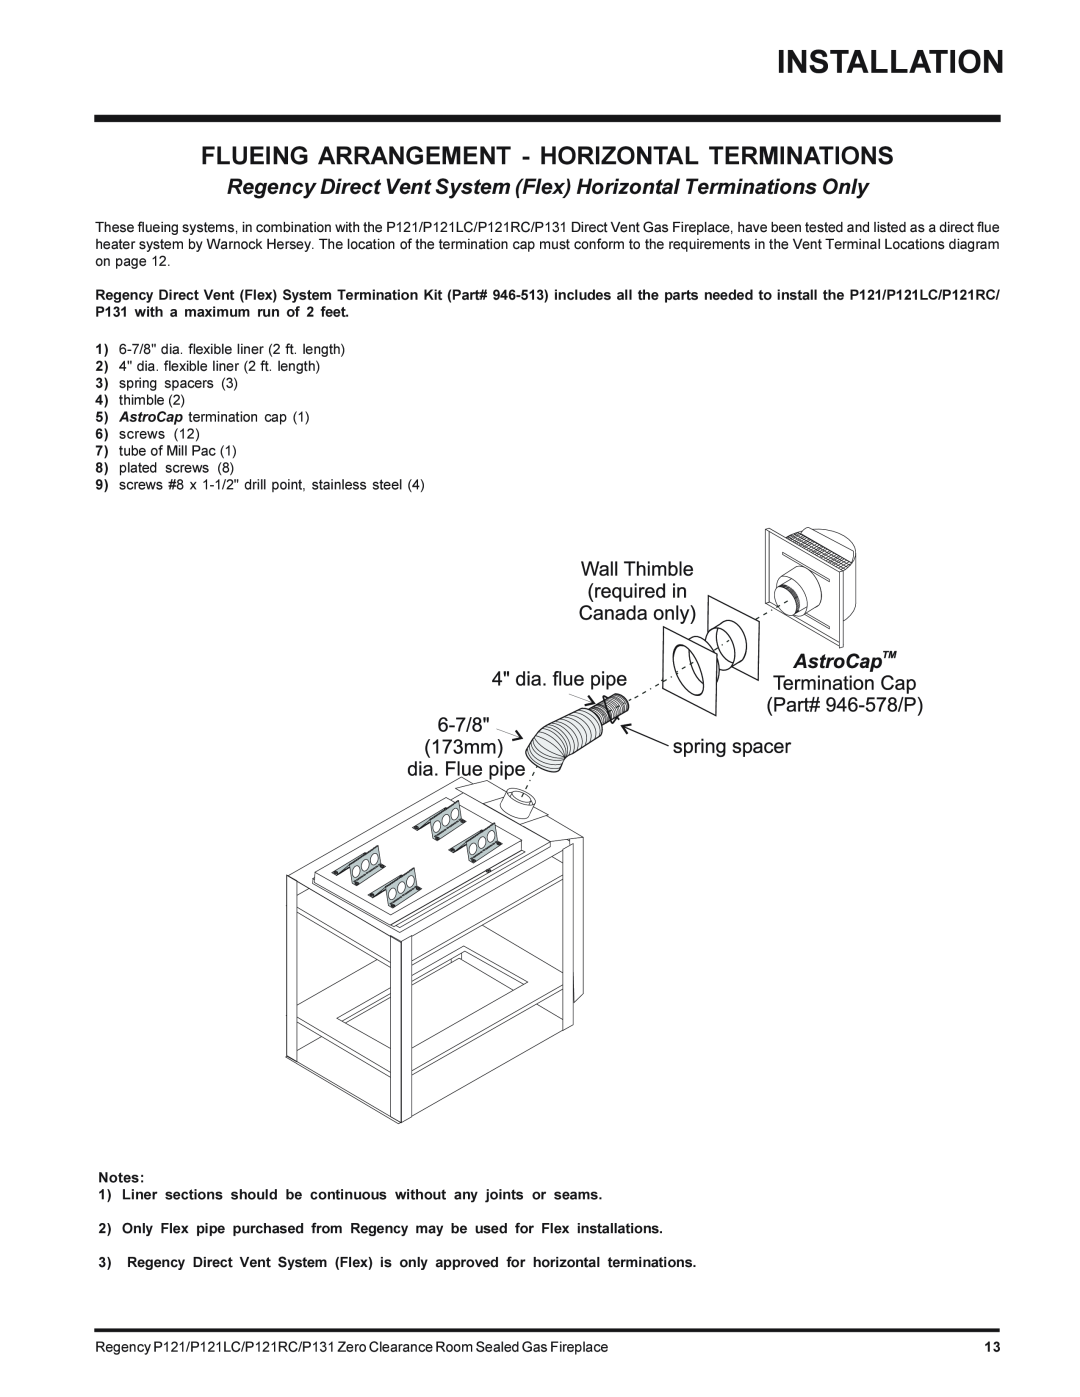 Regency P121LC-NG, P131-NG, P121RC-NG, P121-NG installation manual Flueing Arrangement - Horizontal Terminations 